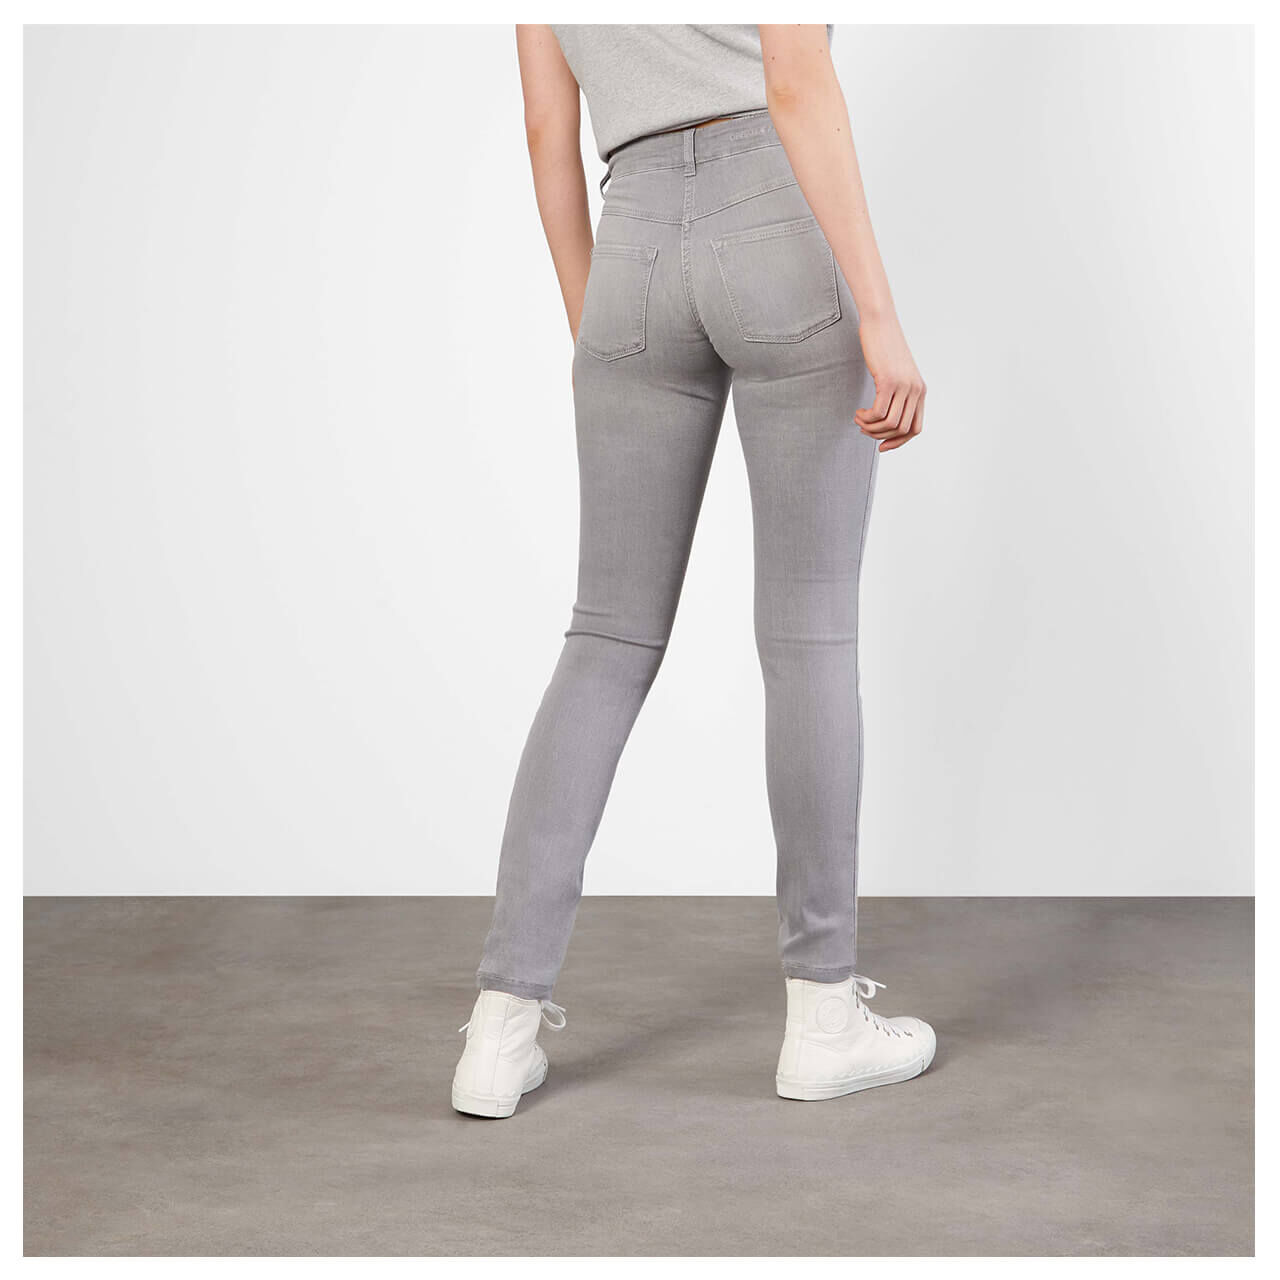 MAC Jeans Dream Skinny für Damen in Grau angewaschen, FarbNr.: D353